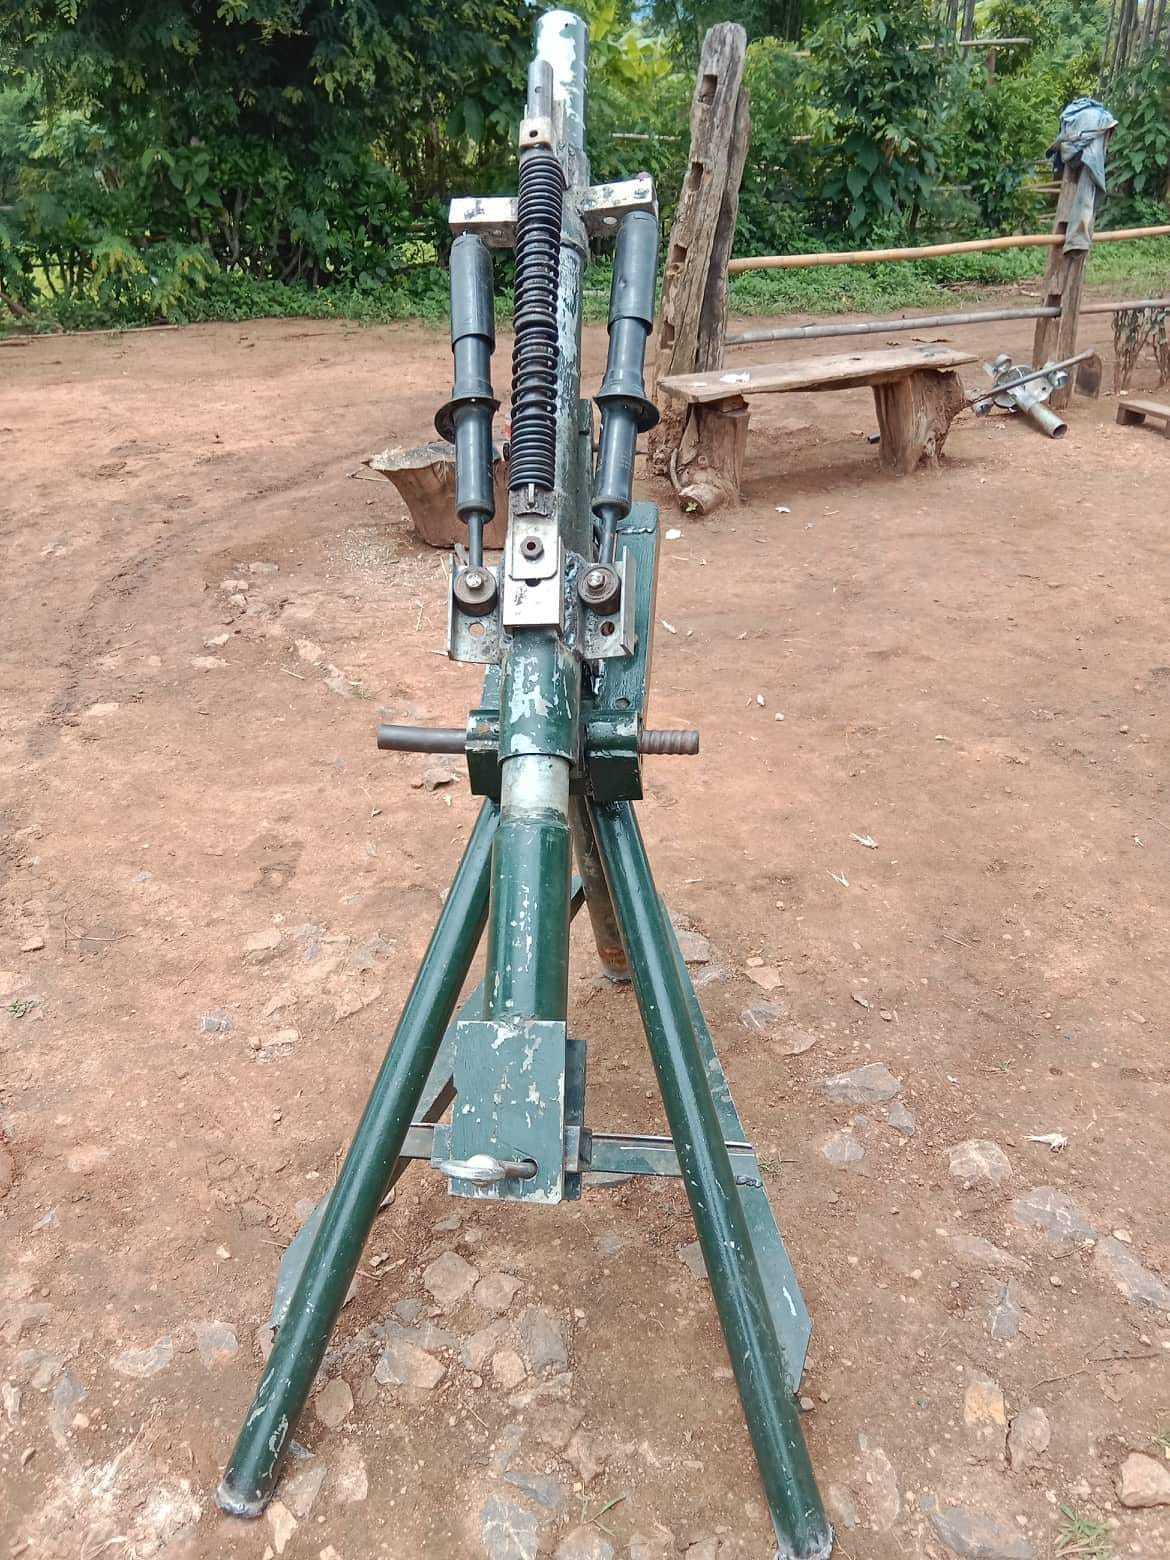 缅甸内比都抵抗武装展示自制迫榴炮,已同其他抵抗武装合作生产